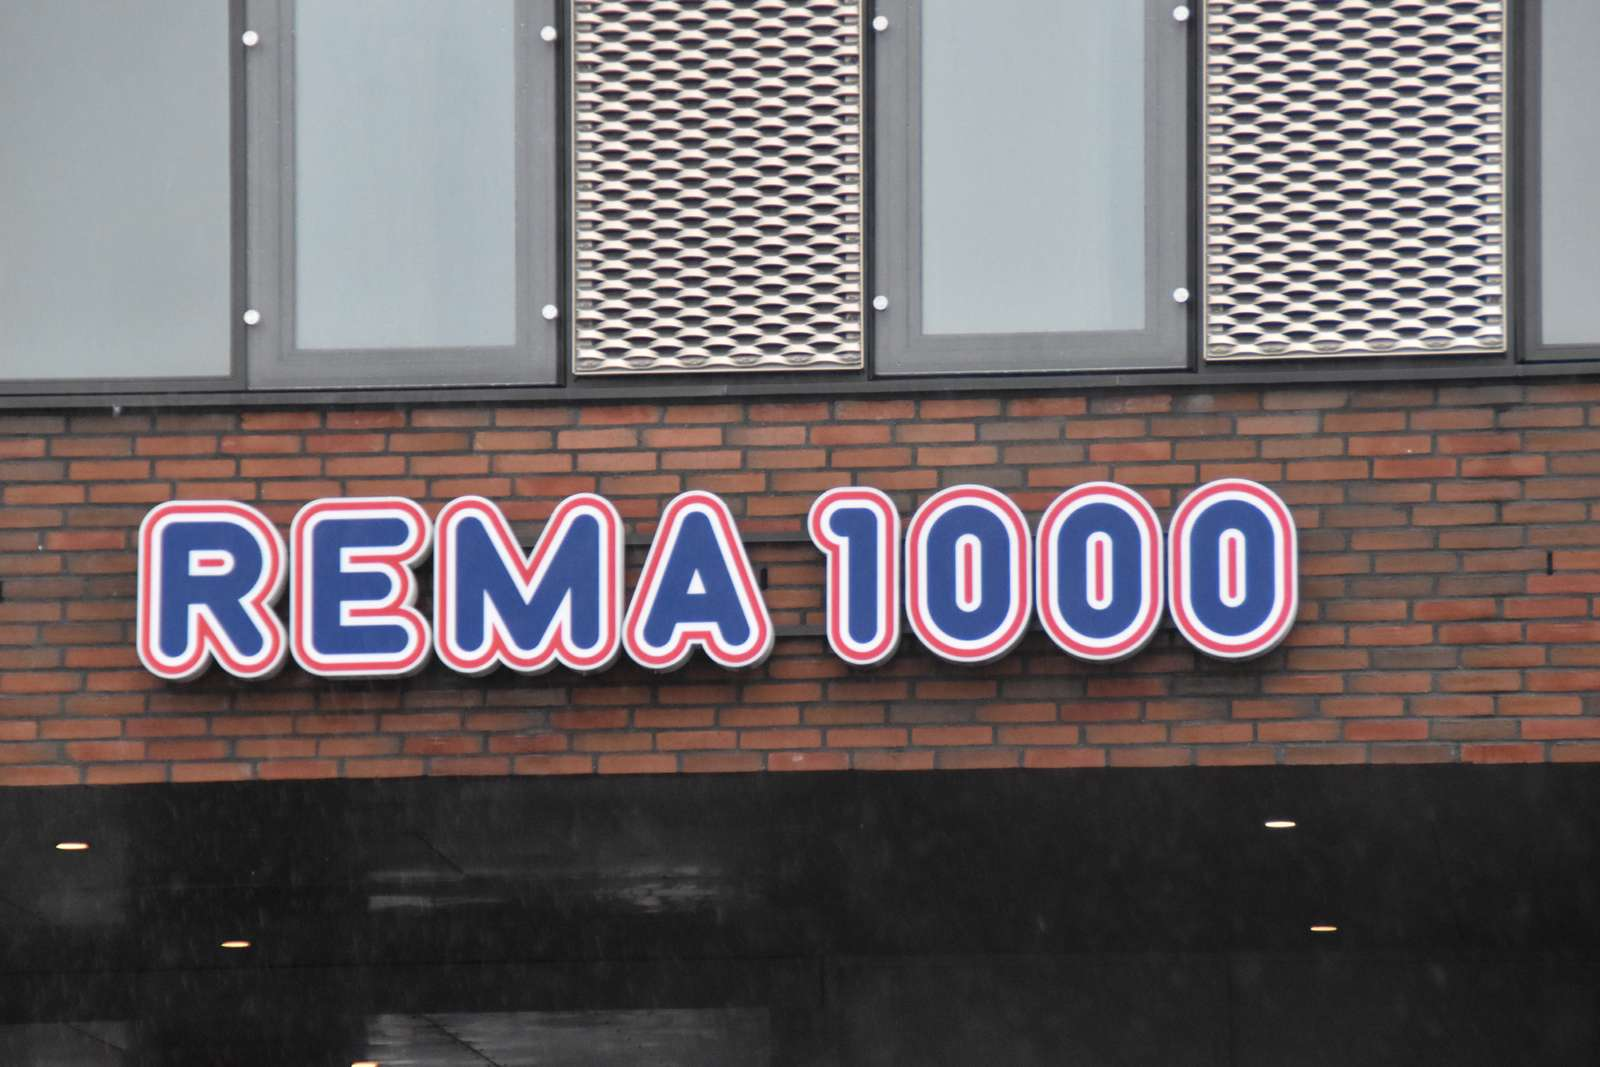 Det her er et billede af Rema 1000s logo. Fronten på en butik.